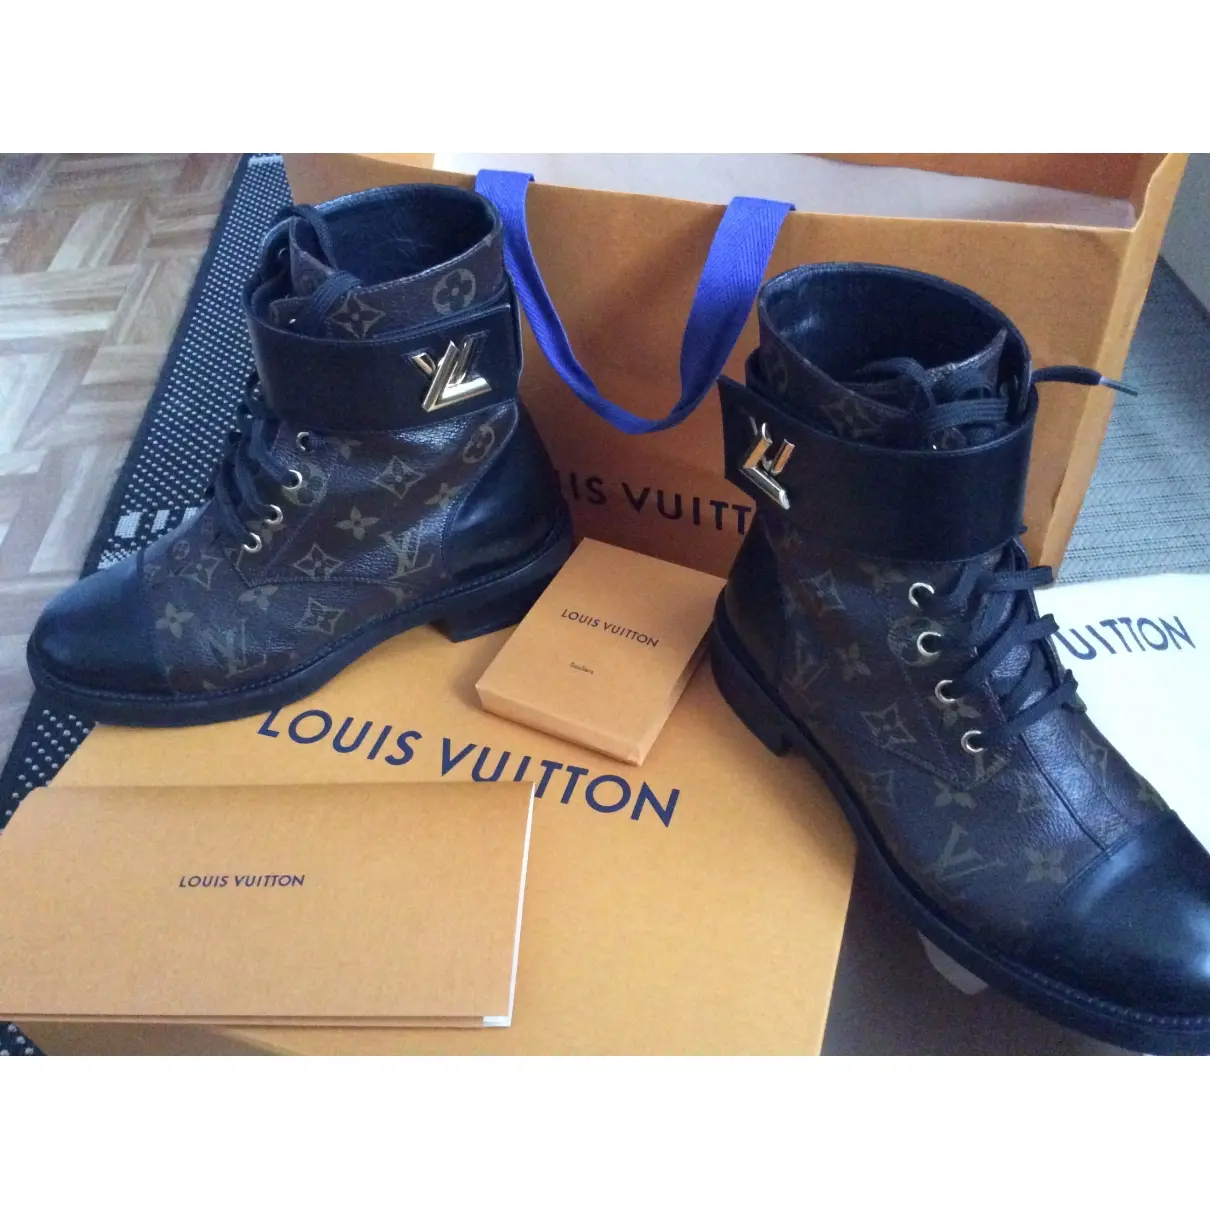 Louis Vuitton Wonderland cloth ankle boots for sale